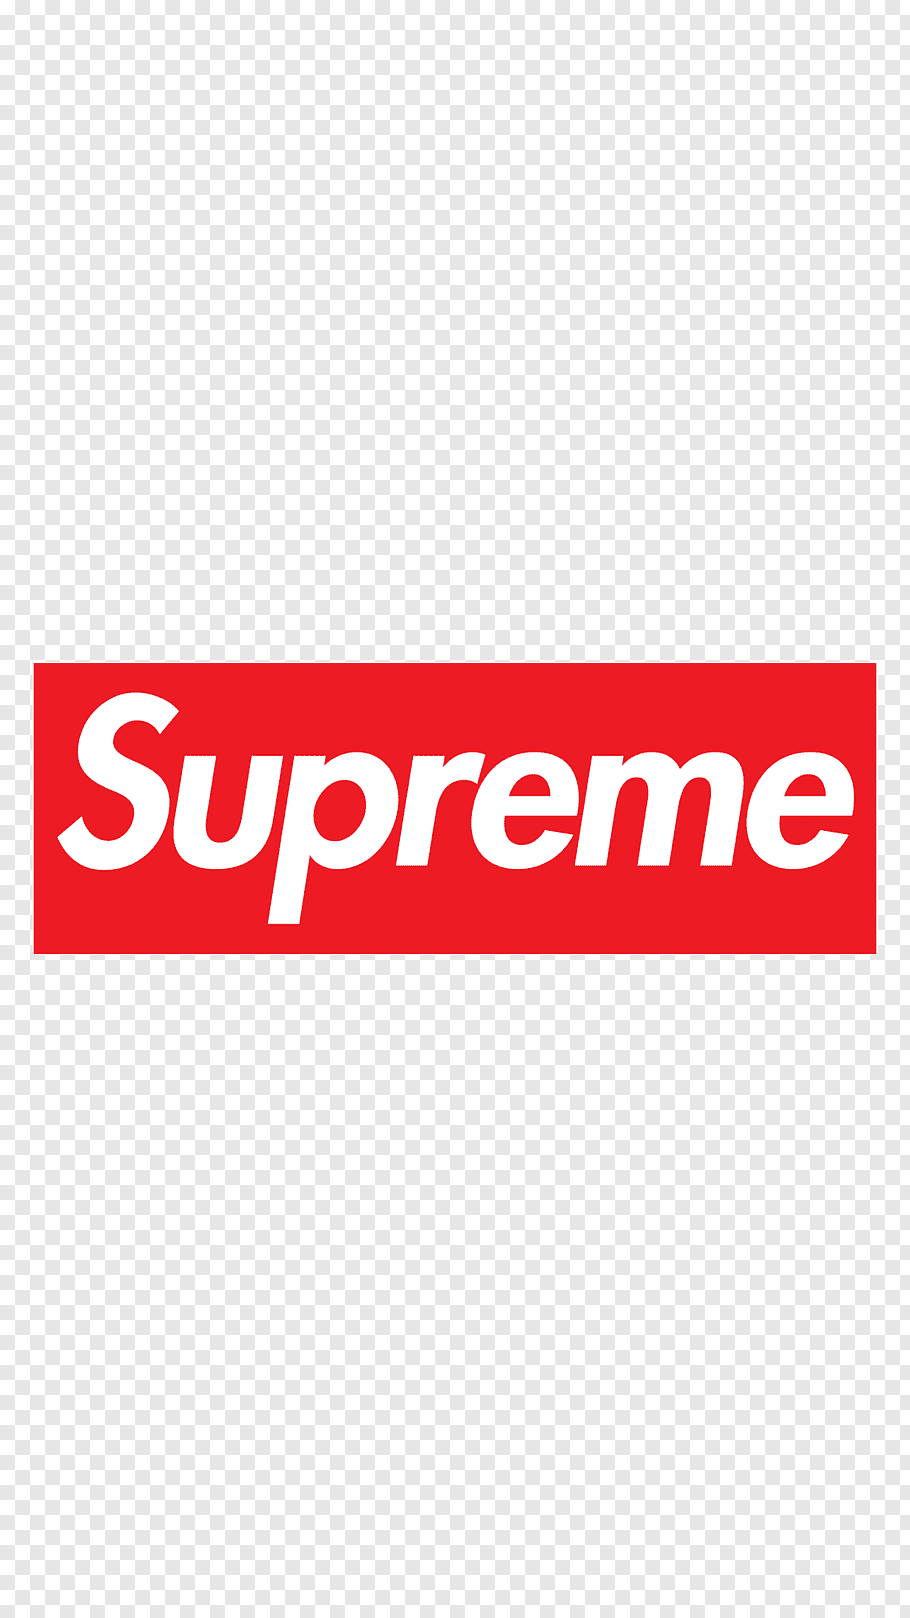 Supreme logo, Supreme T.